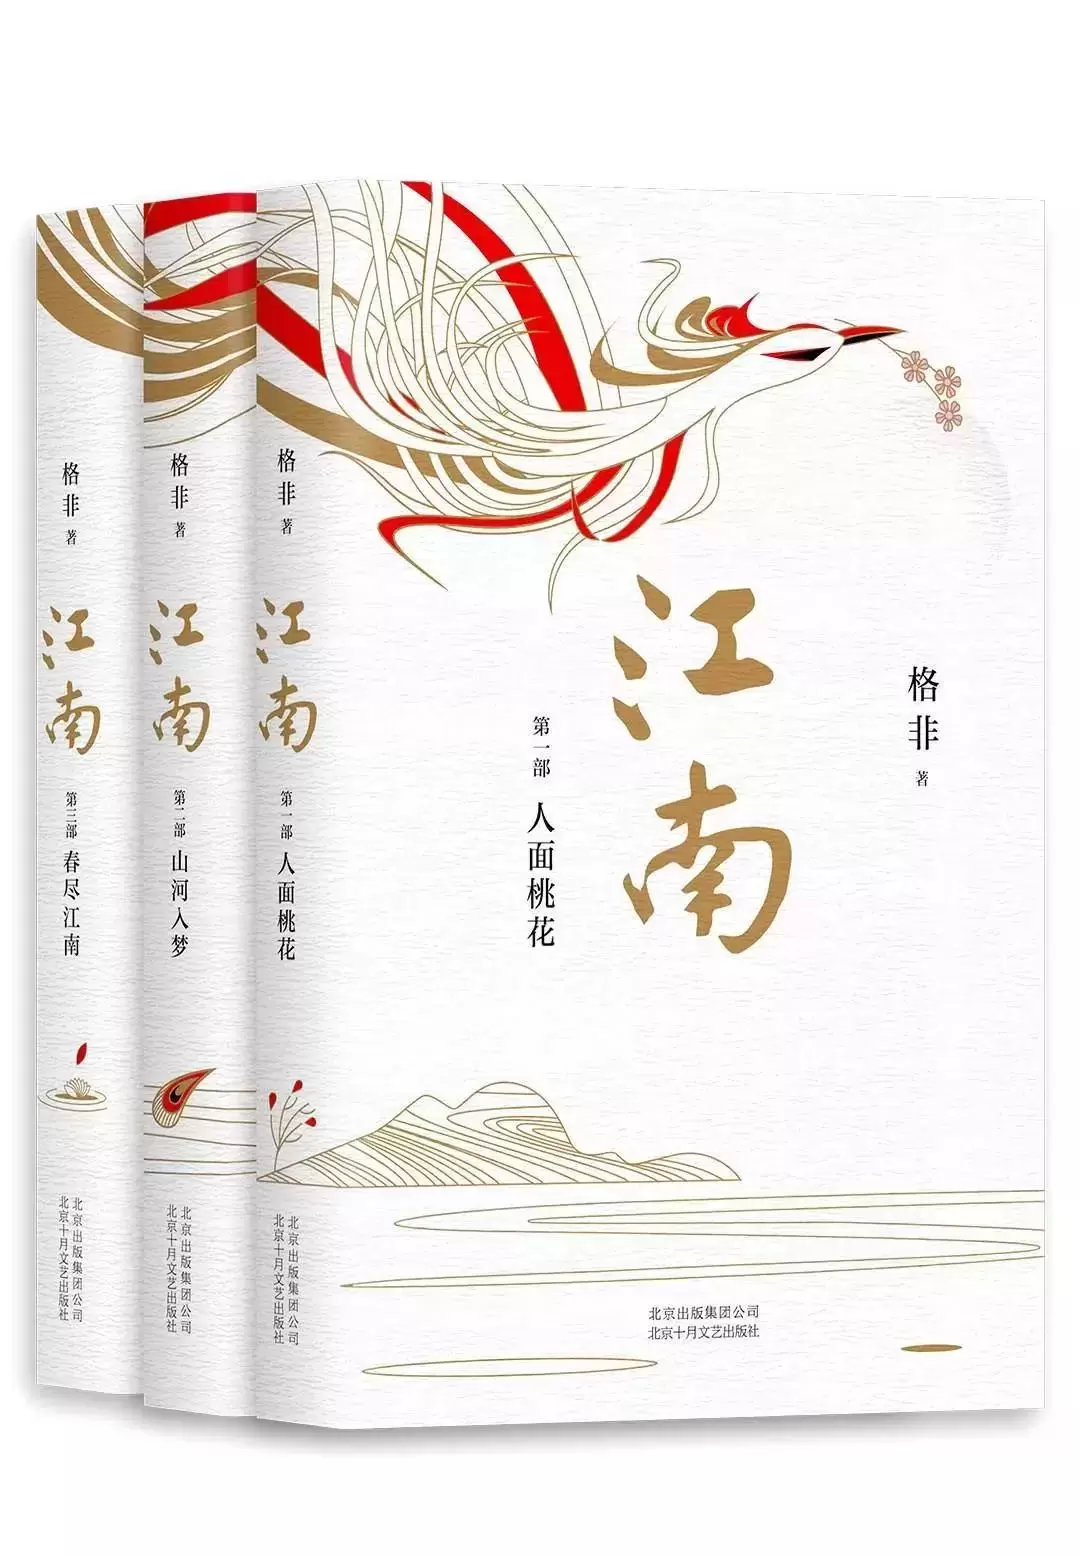 格非的小说《江南三部曲》会给读者带来什么样的体验和感受